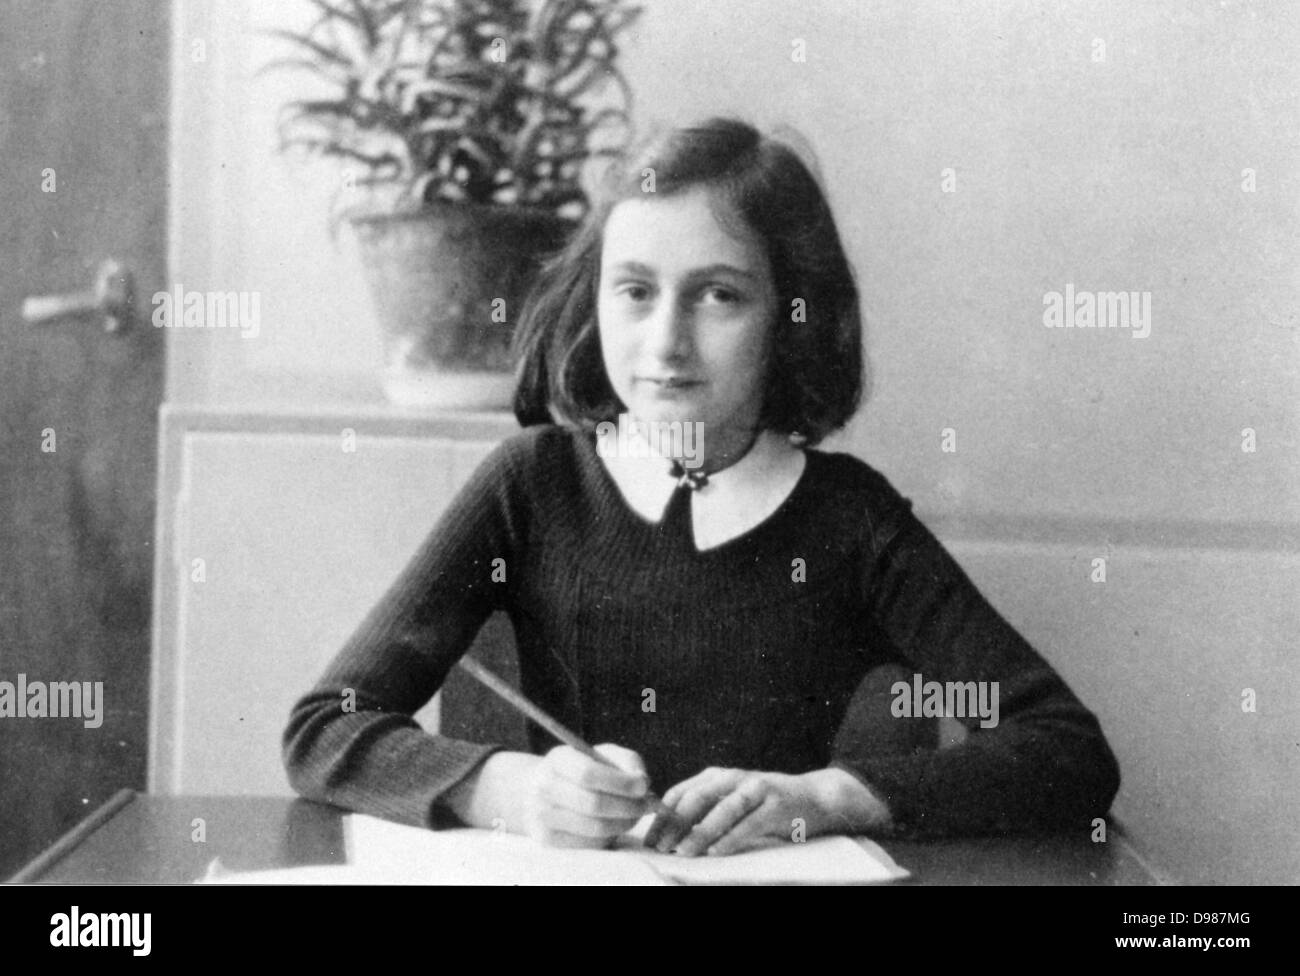 Anne Frank (1929-1945) célèbre tableaux journal deux ans de sa vie de 1942 à 1944, lorsque sa famille se cachaient à Amsterdam du nazis allemands. Le journal commence juste avant la famille repliés dans leur annexe 'Secret'. Banque D'Images